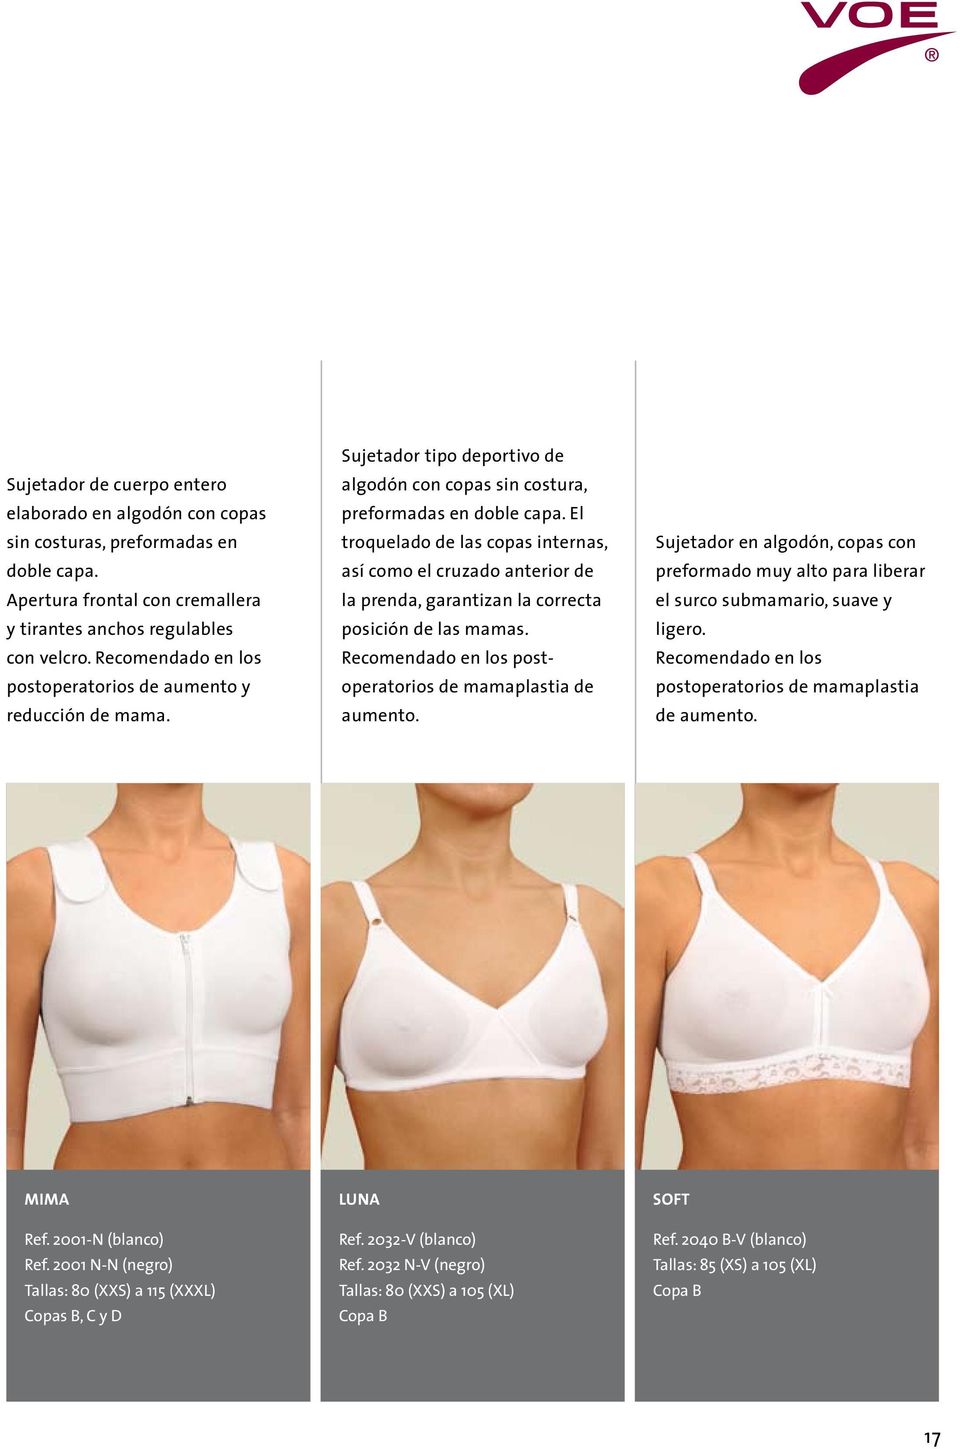 El troquelado de las copas internas, así como el cruzado anterior de la prenda, garantizan la correcta posición de las mamas. Recomendado en los postoperatorios de mamaplastia de aumento.